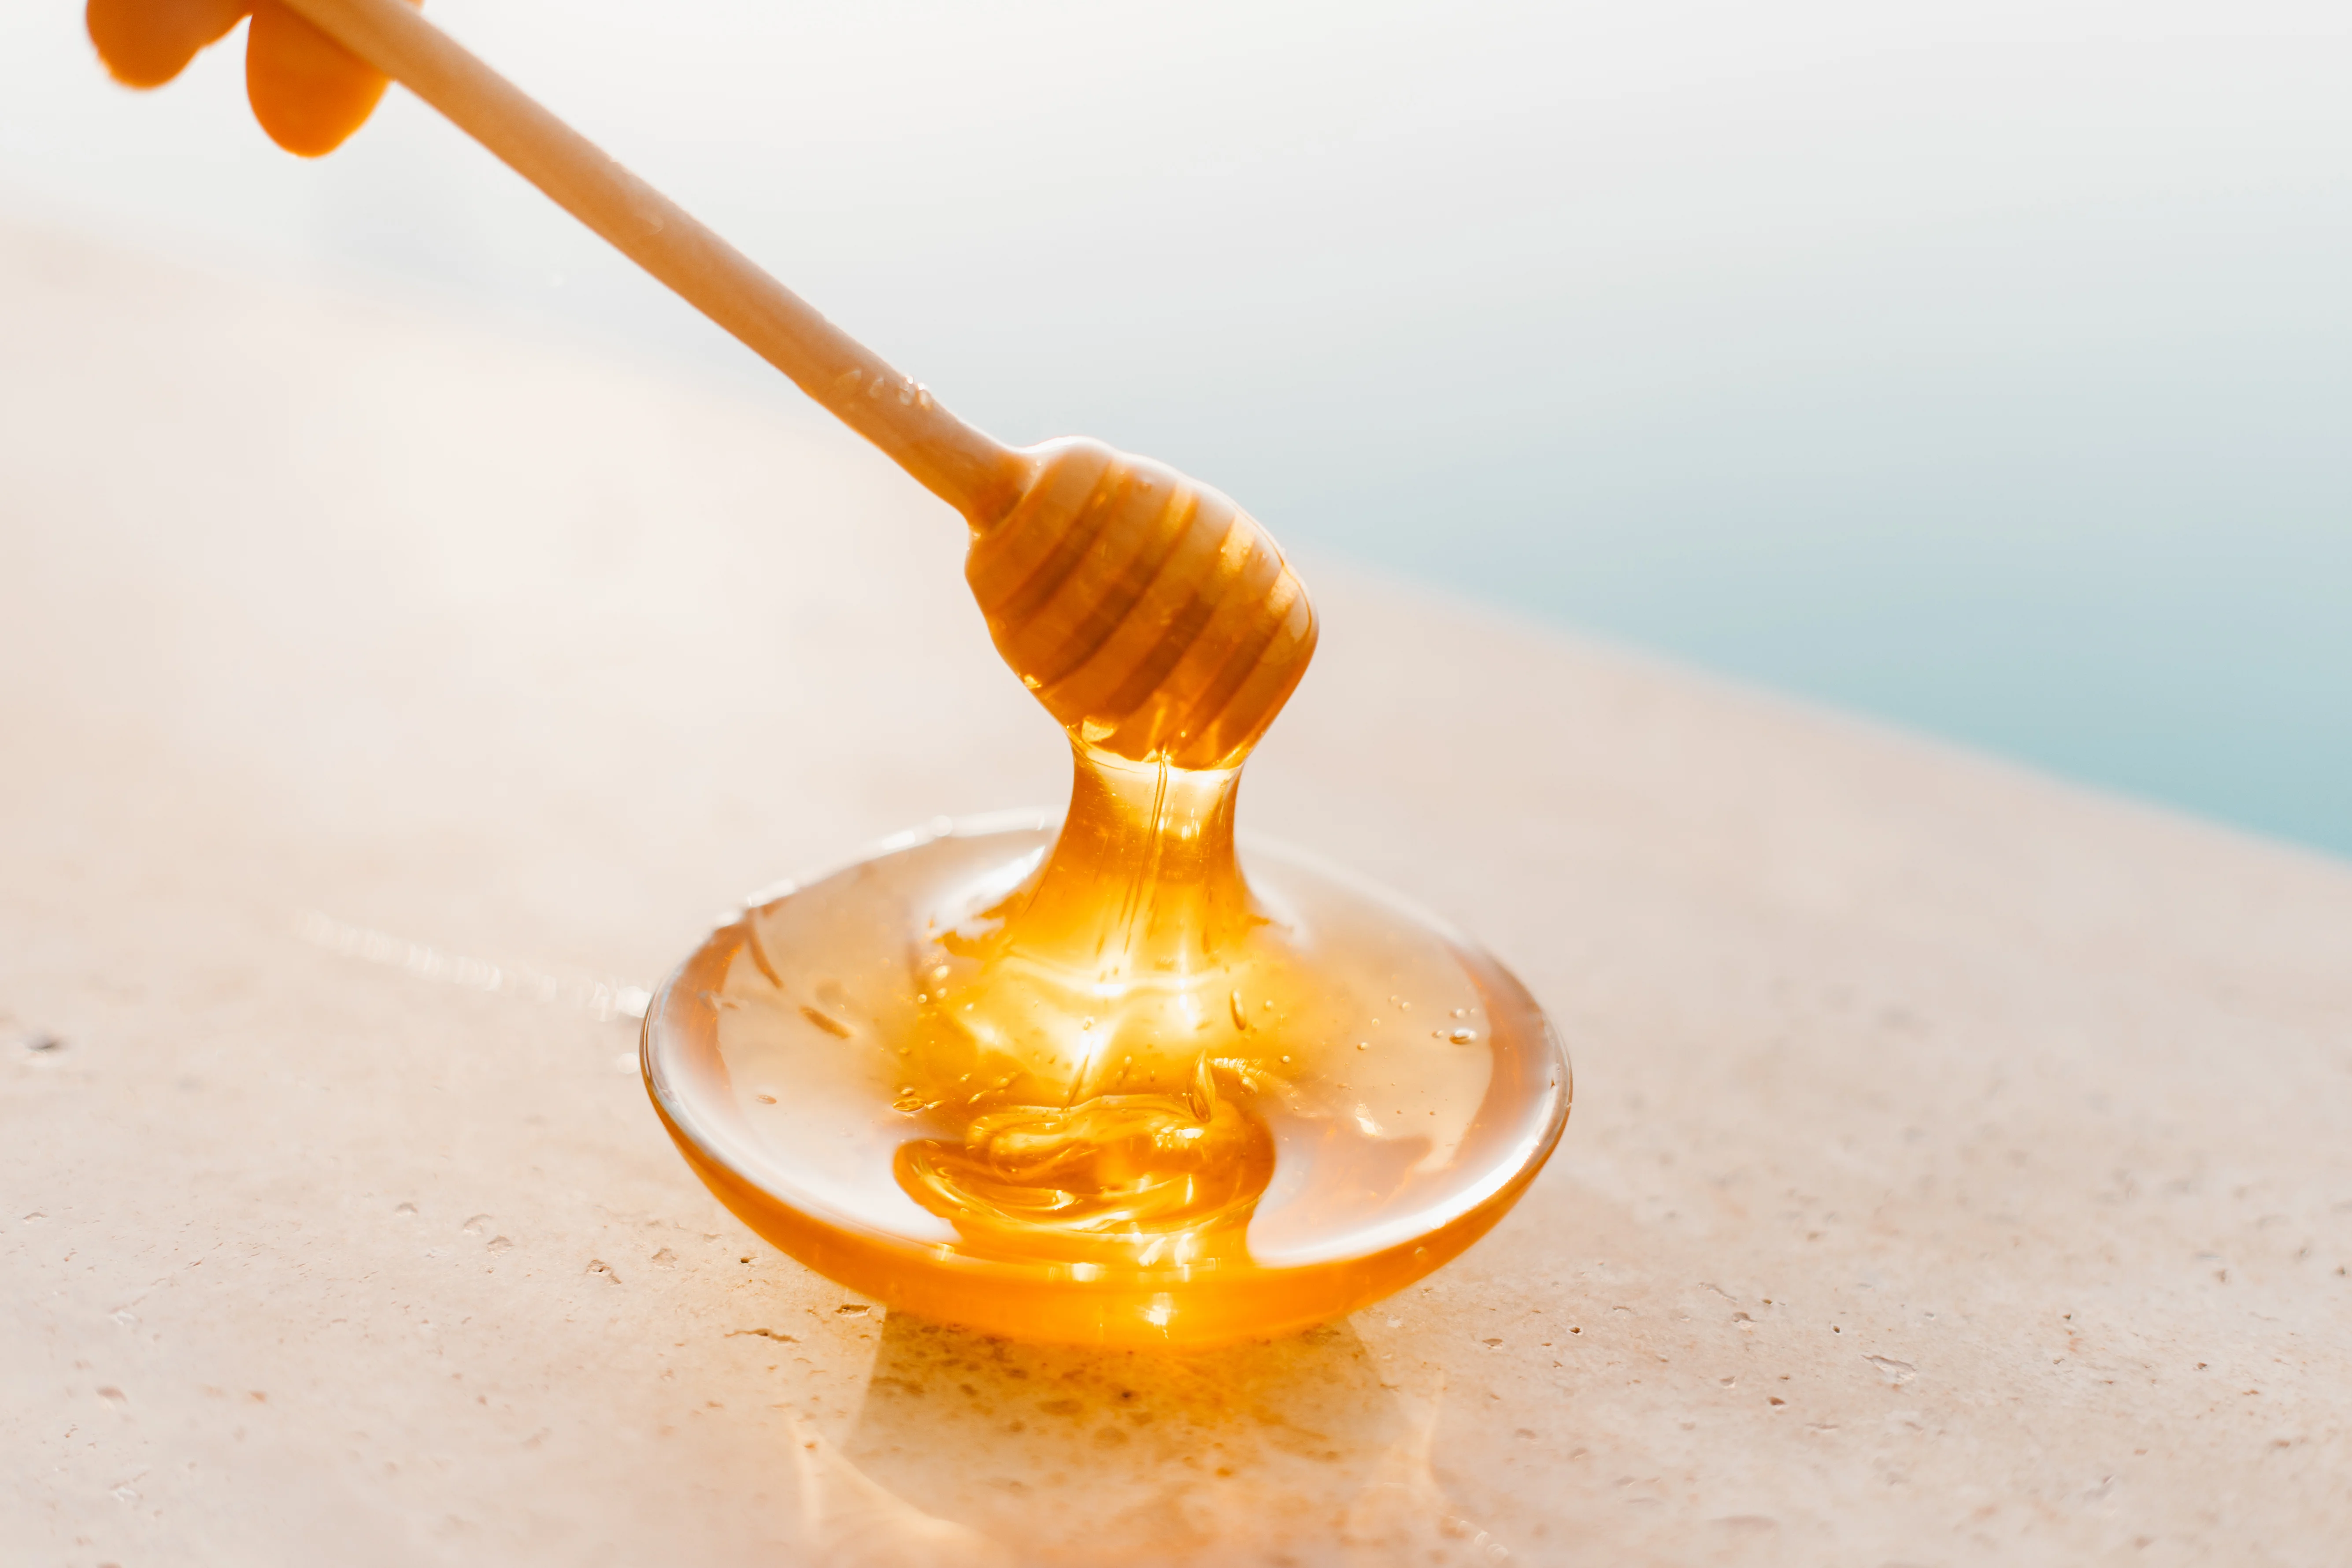 9 уникальных свойств мёда